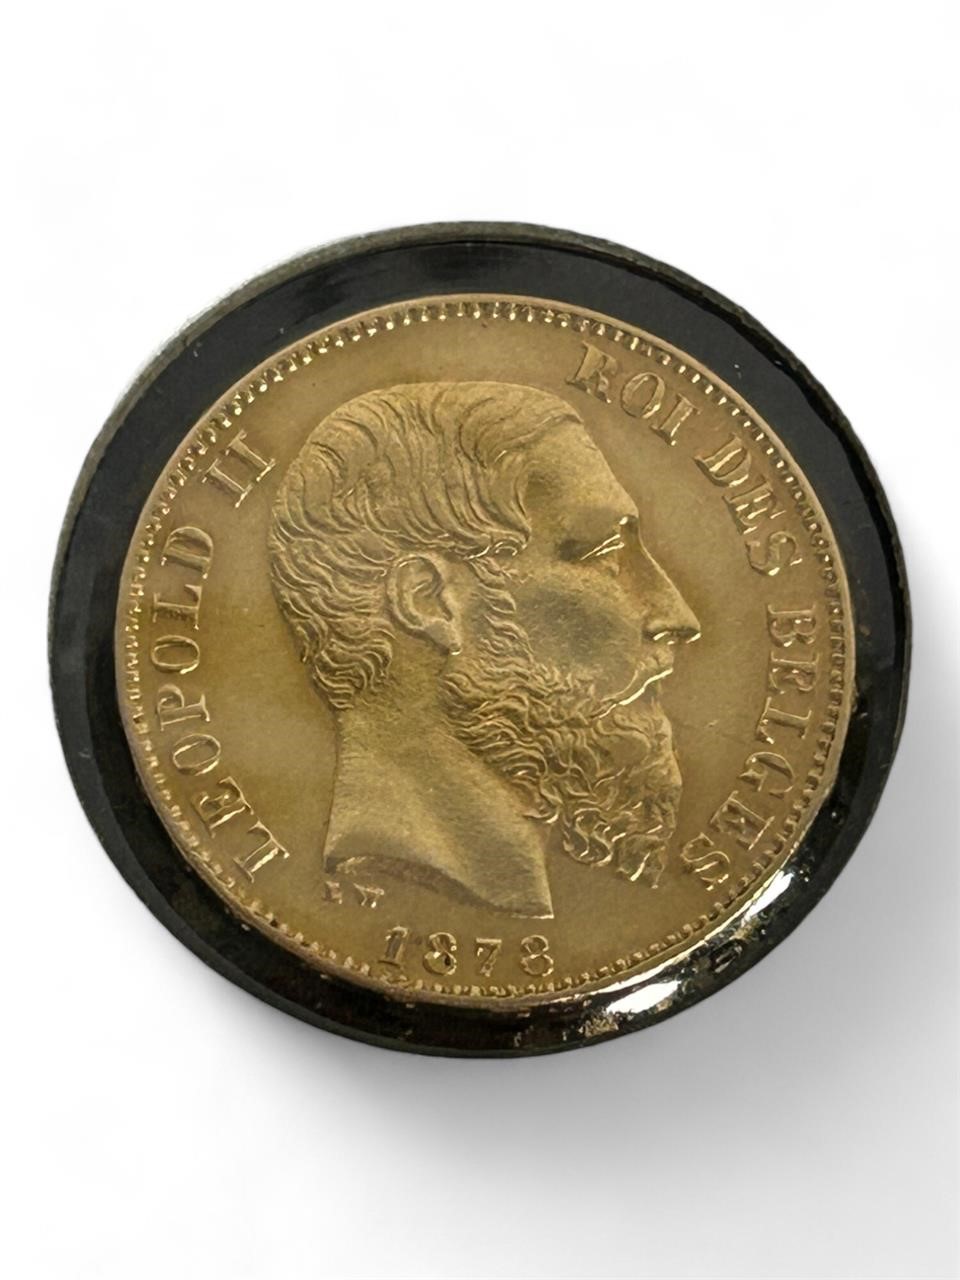 1878 Belchium 20 Francs Leopold II Gold Coin